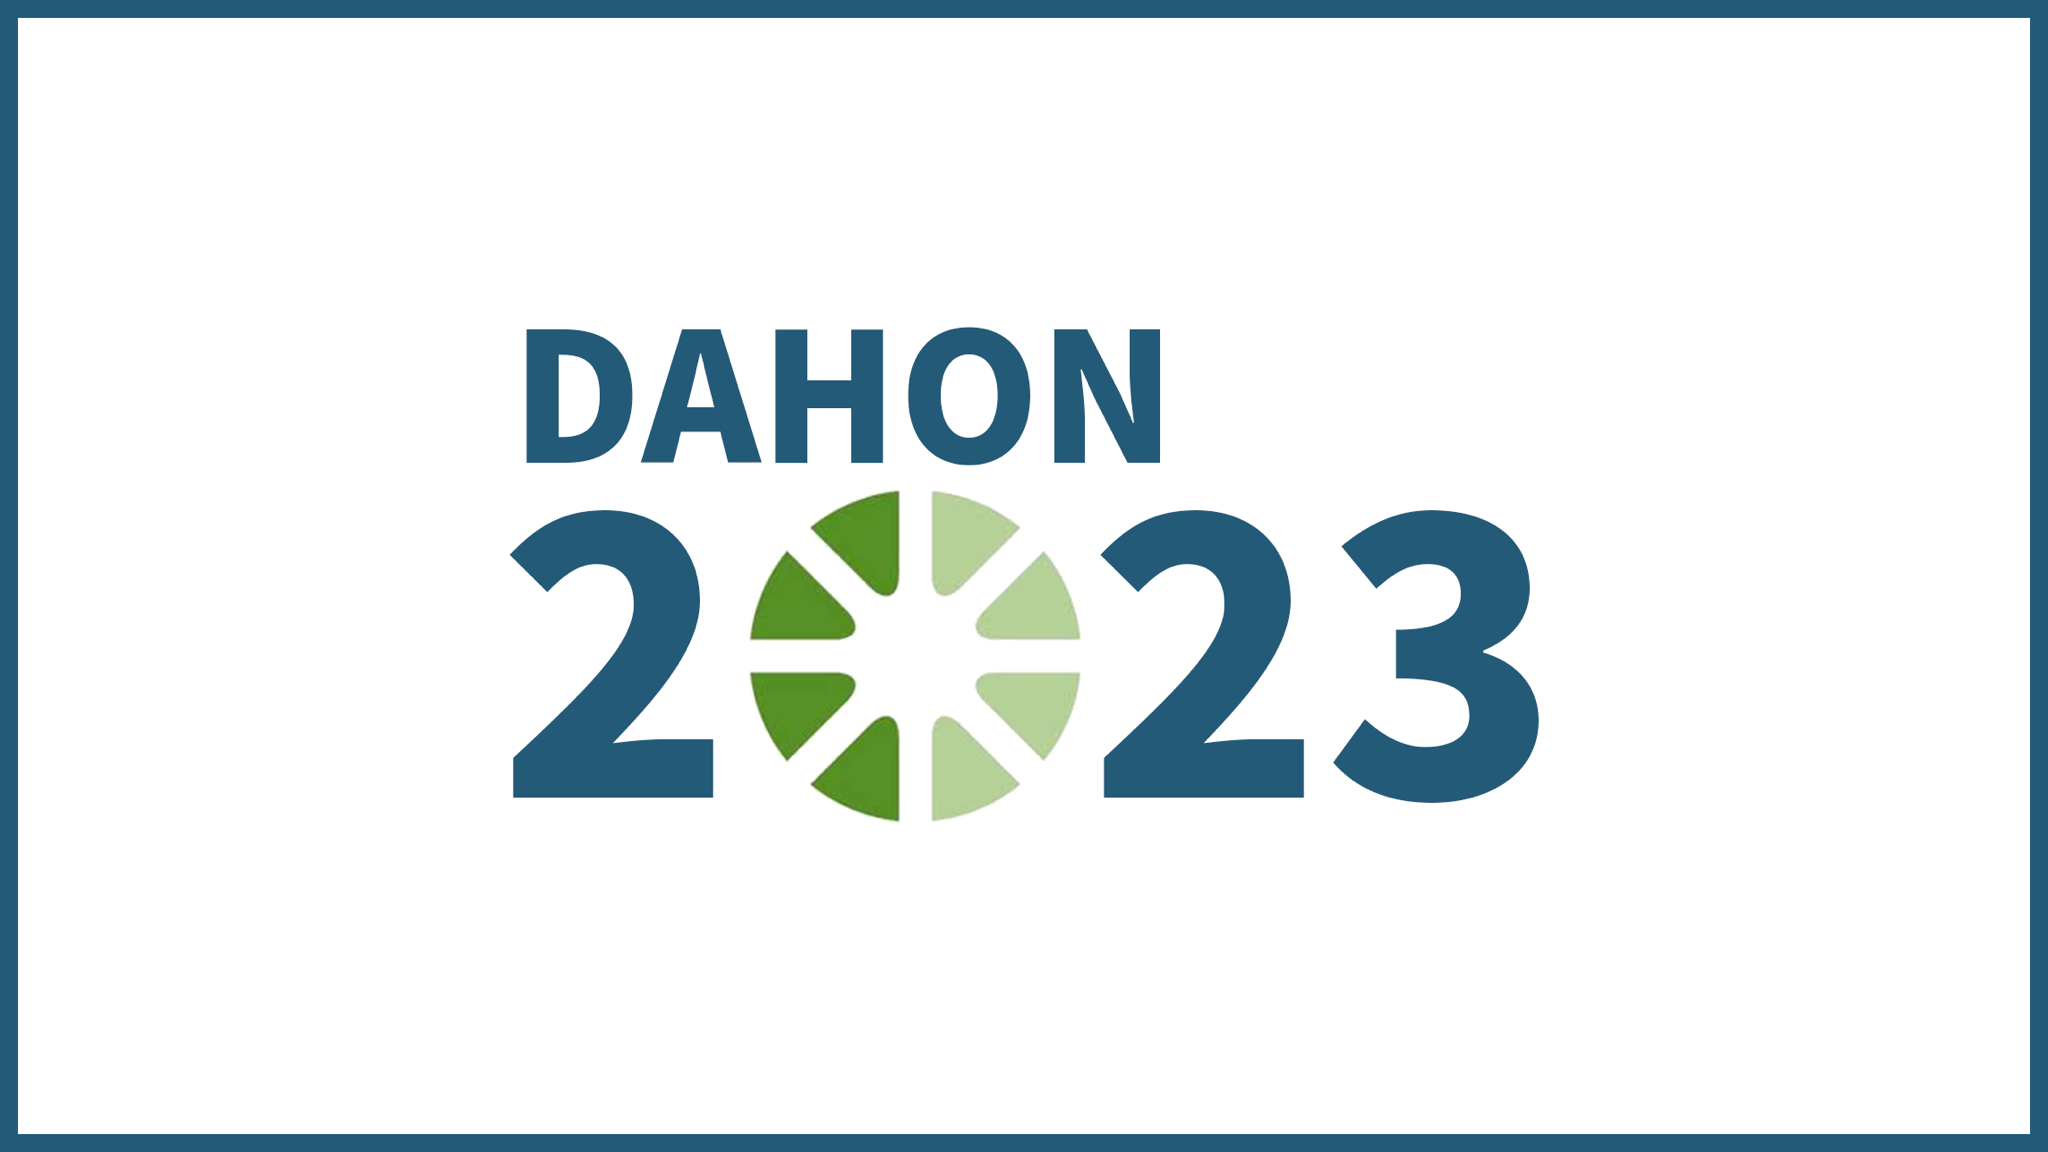 Dahon 2023 unveiled